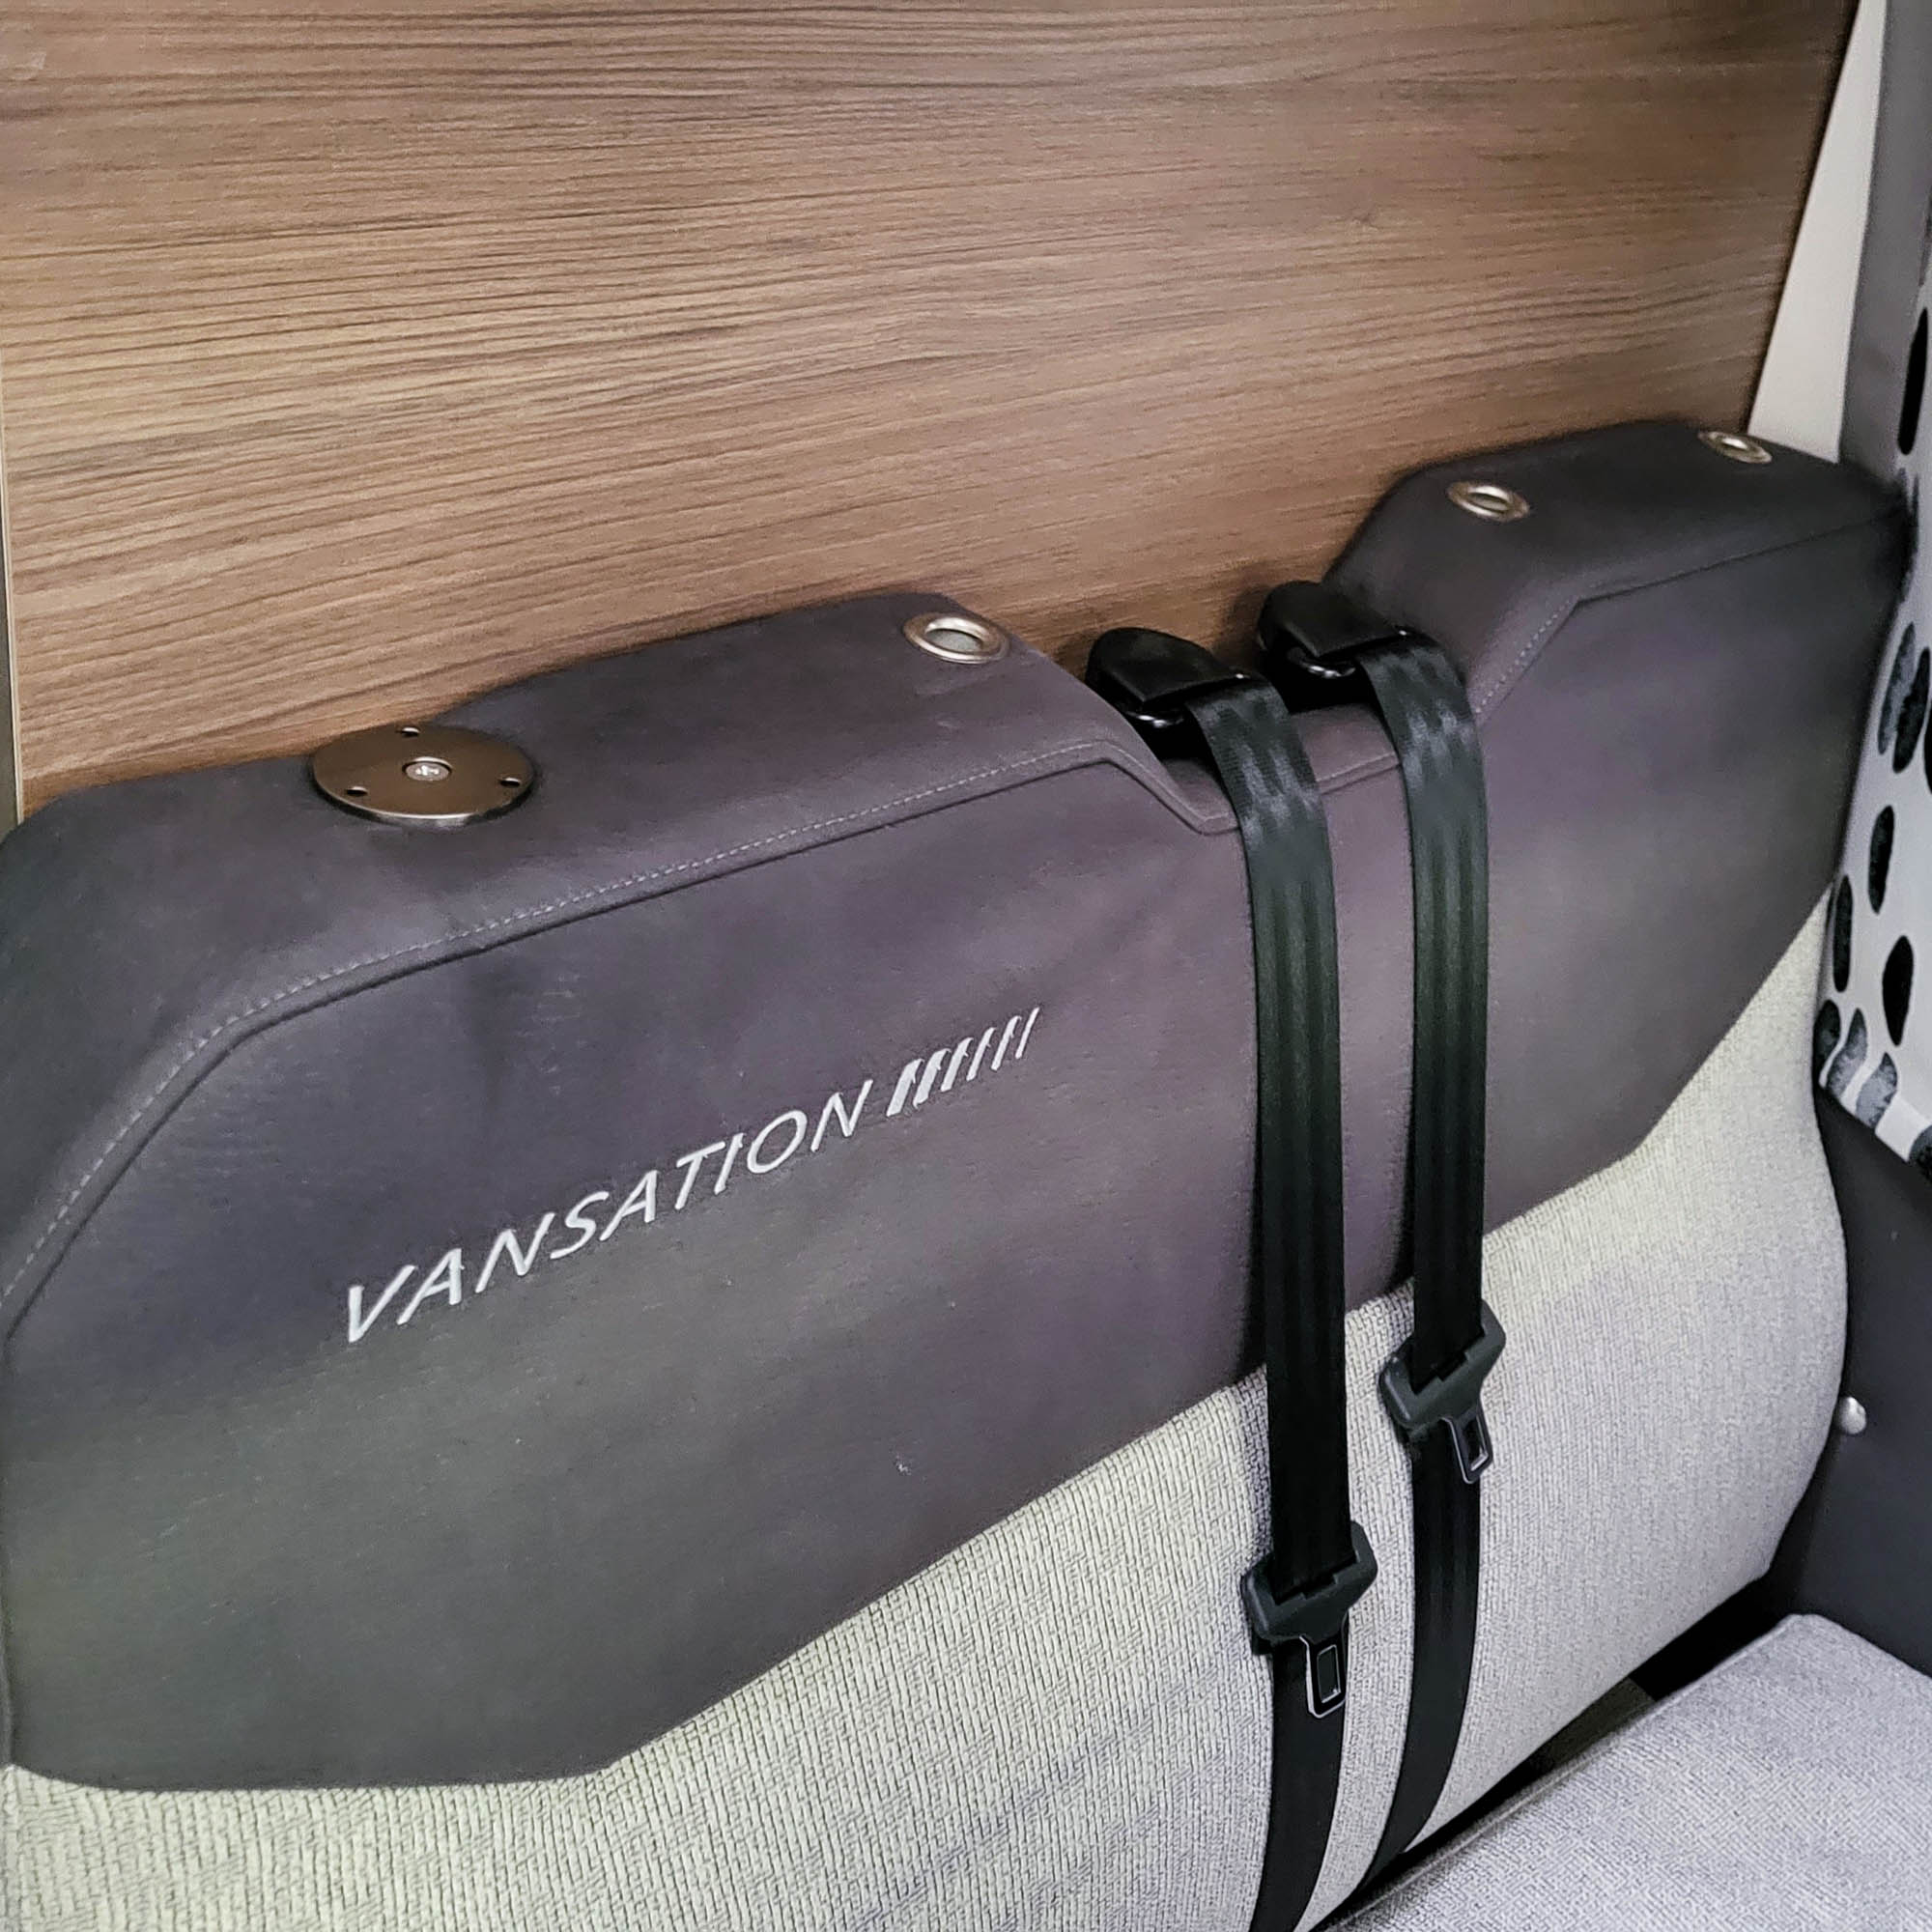 Ablageboard für Knaus Vansation auf Peugeot Basis